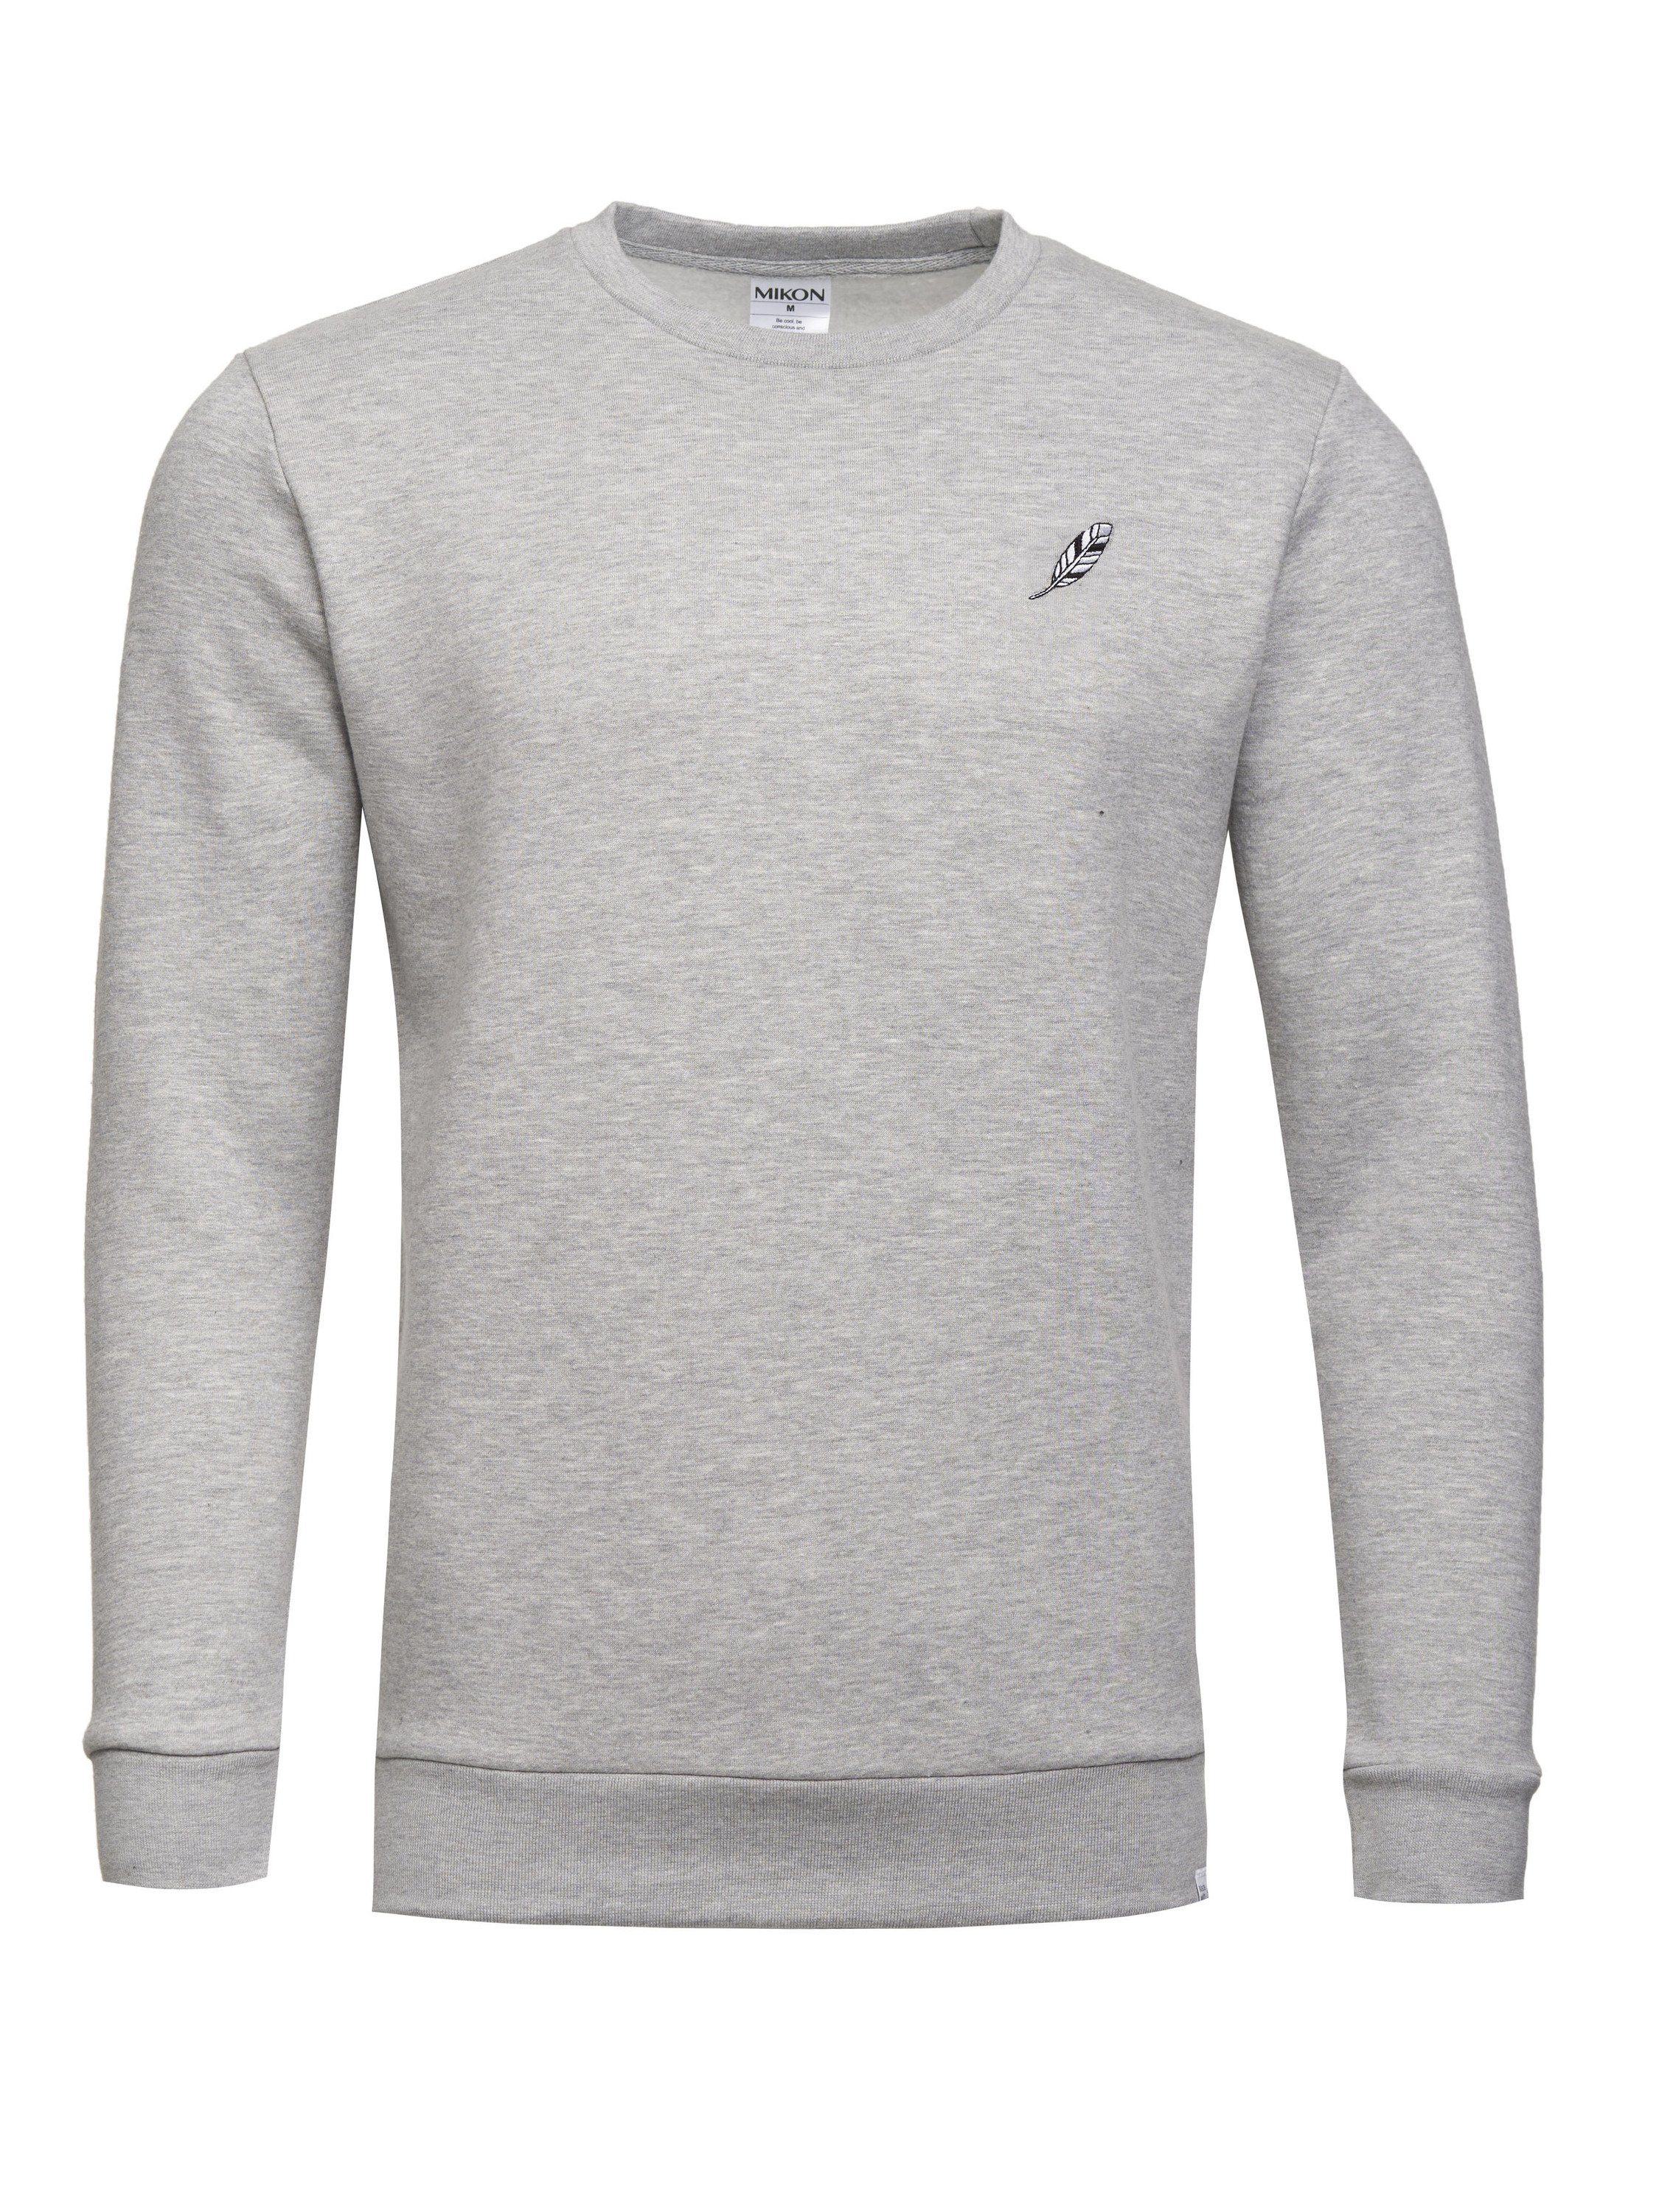 MIKON Sweatshirt Grey GOTS zertifizierte Bio-Baumwolle Feder